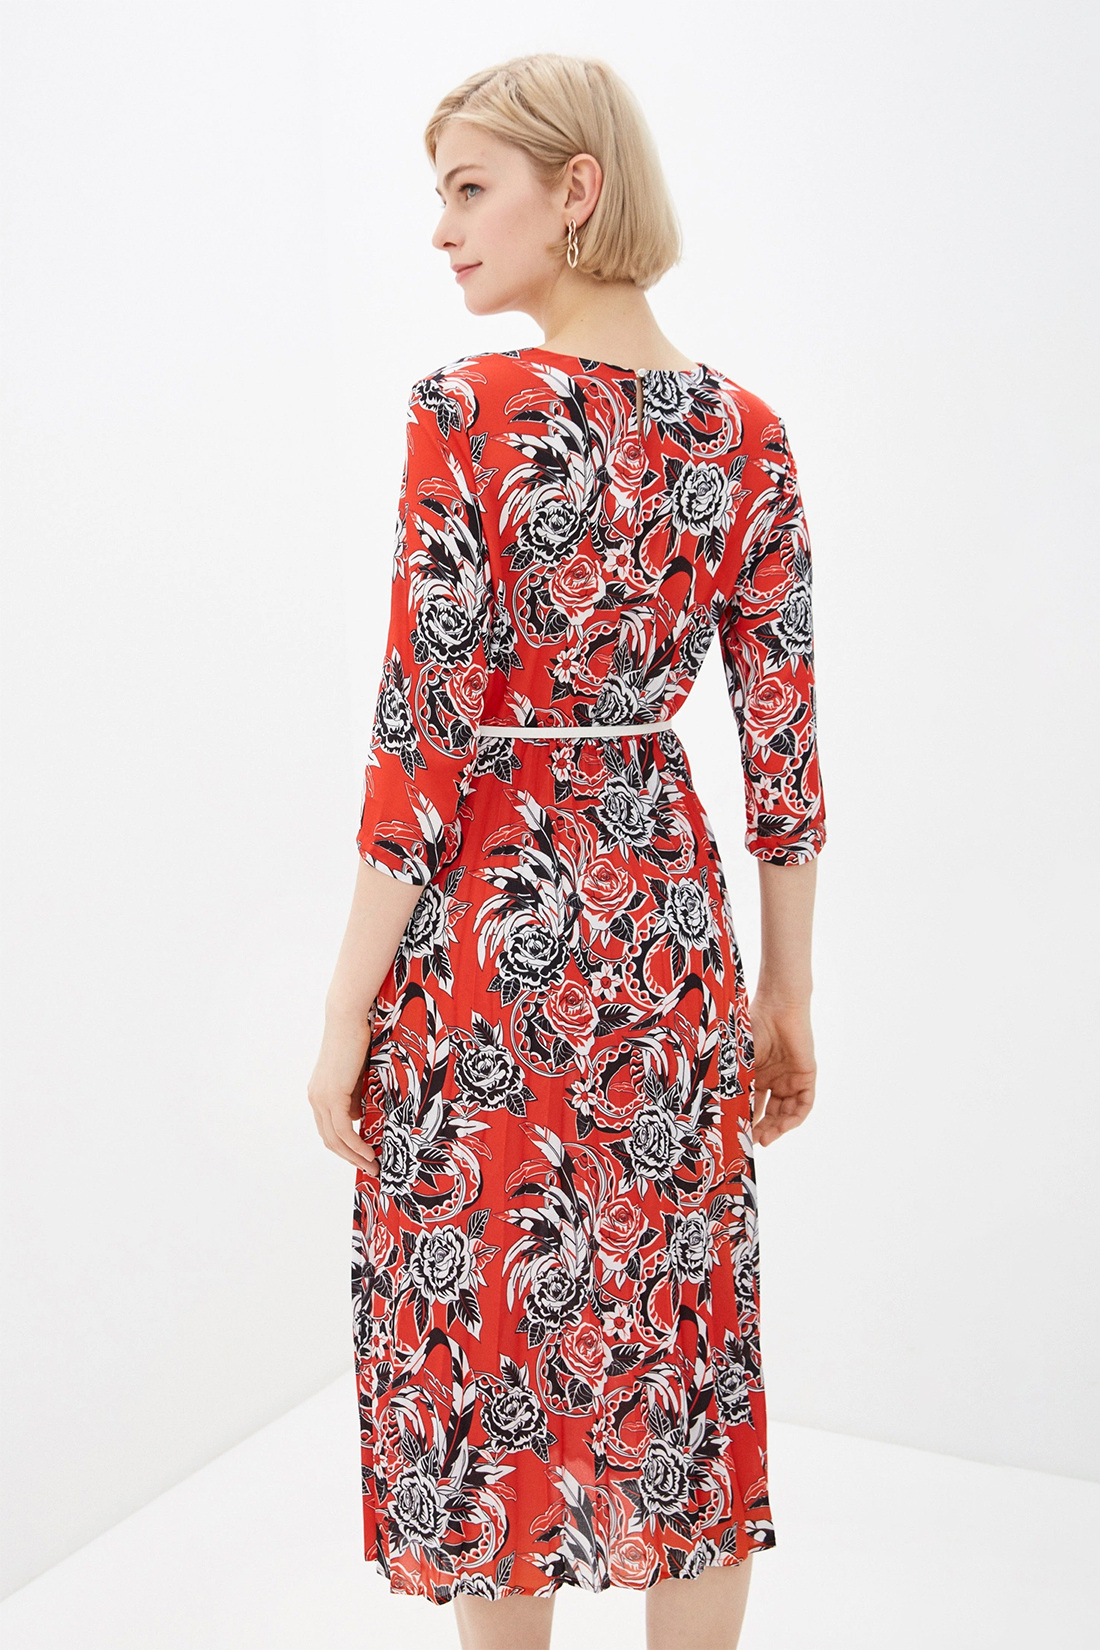 Платье с цветочным узором (арт. baon B450010), размер M Платье с цветочным узором (арт. baon B450010) - фото 2